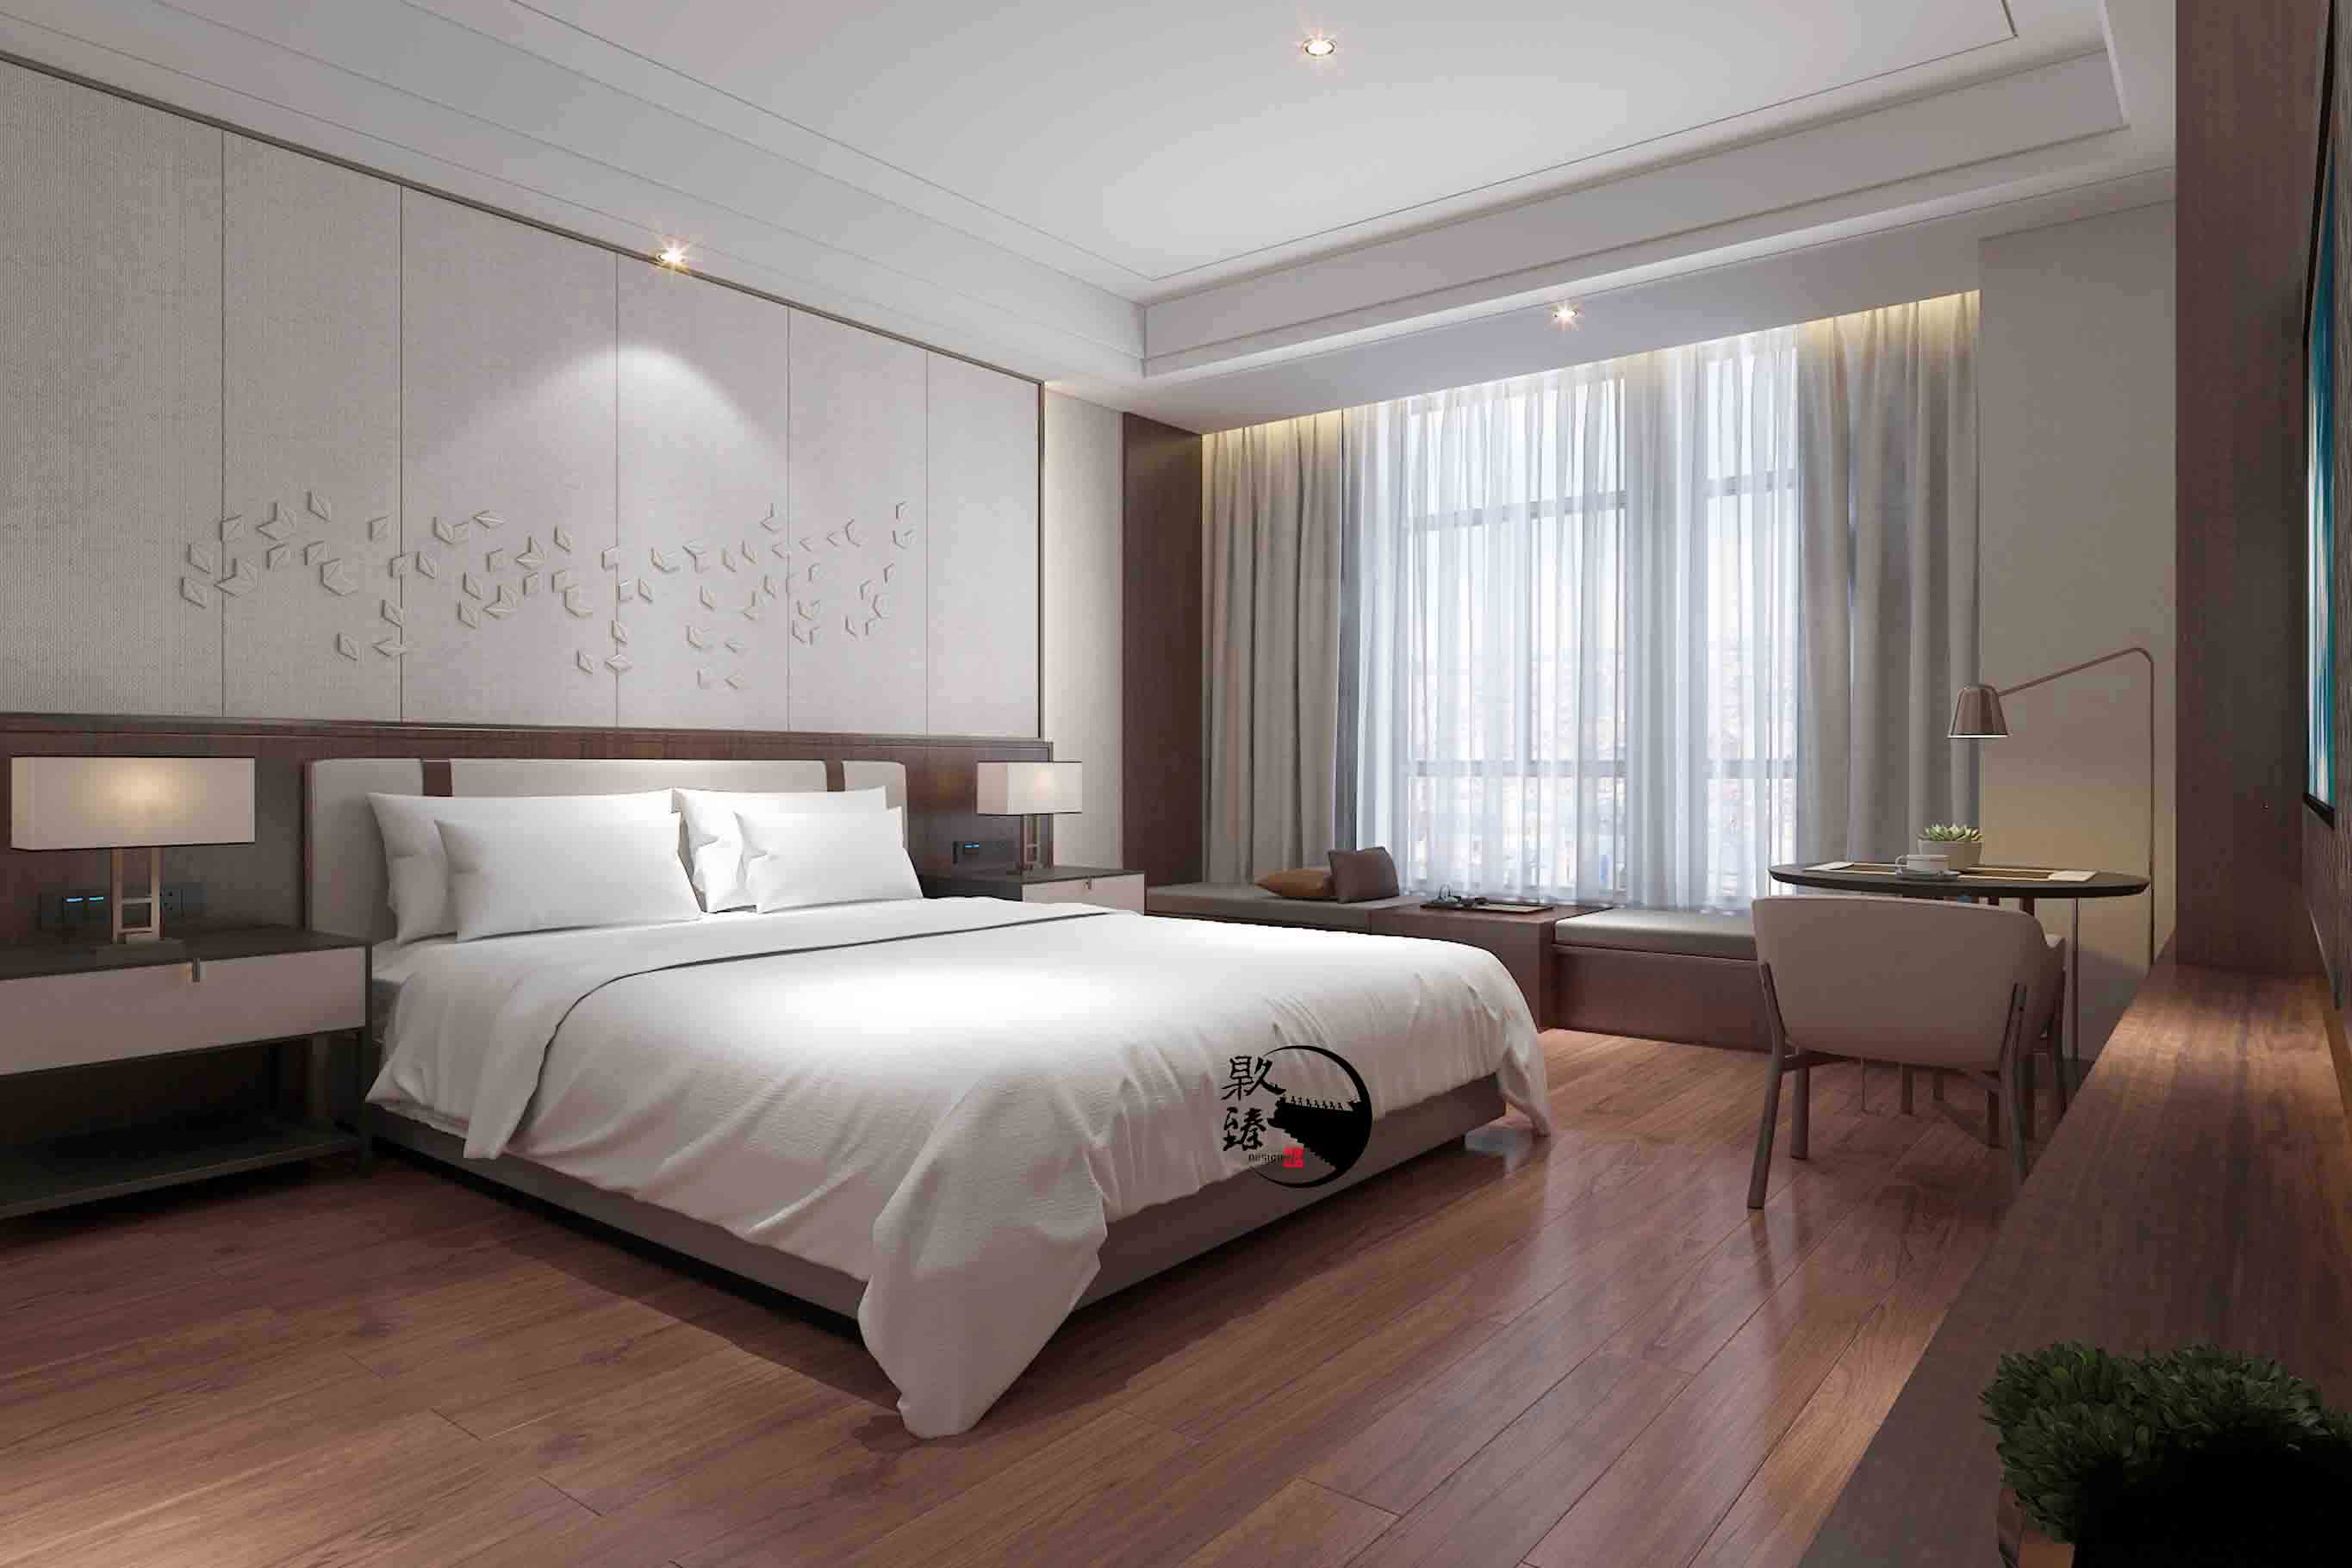 平凉米素酒店设计|满足客户对舒适和安静的需求